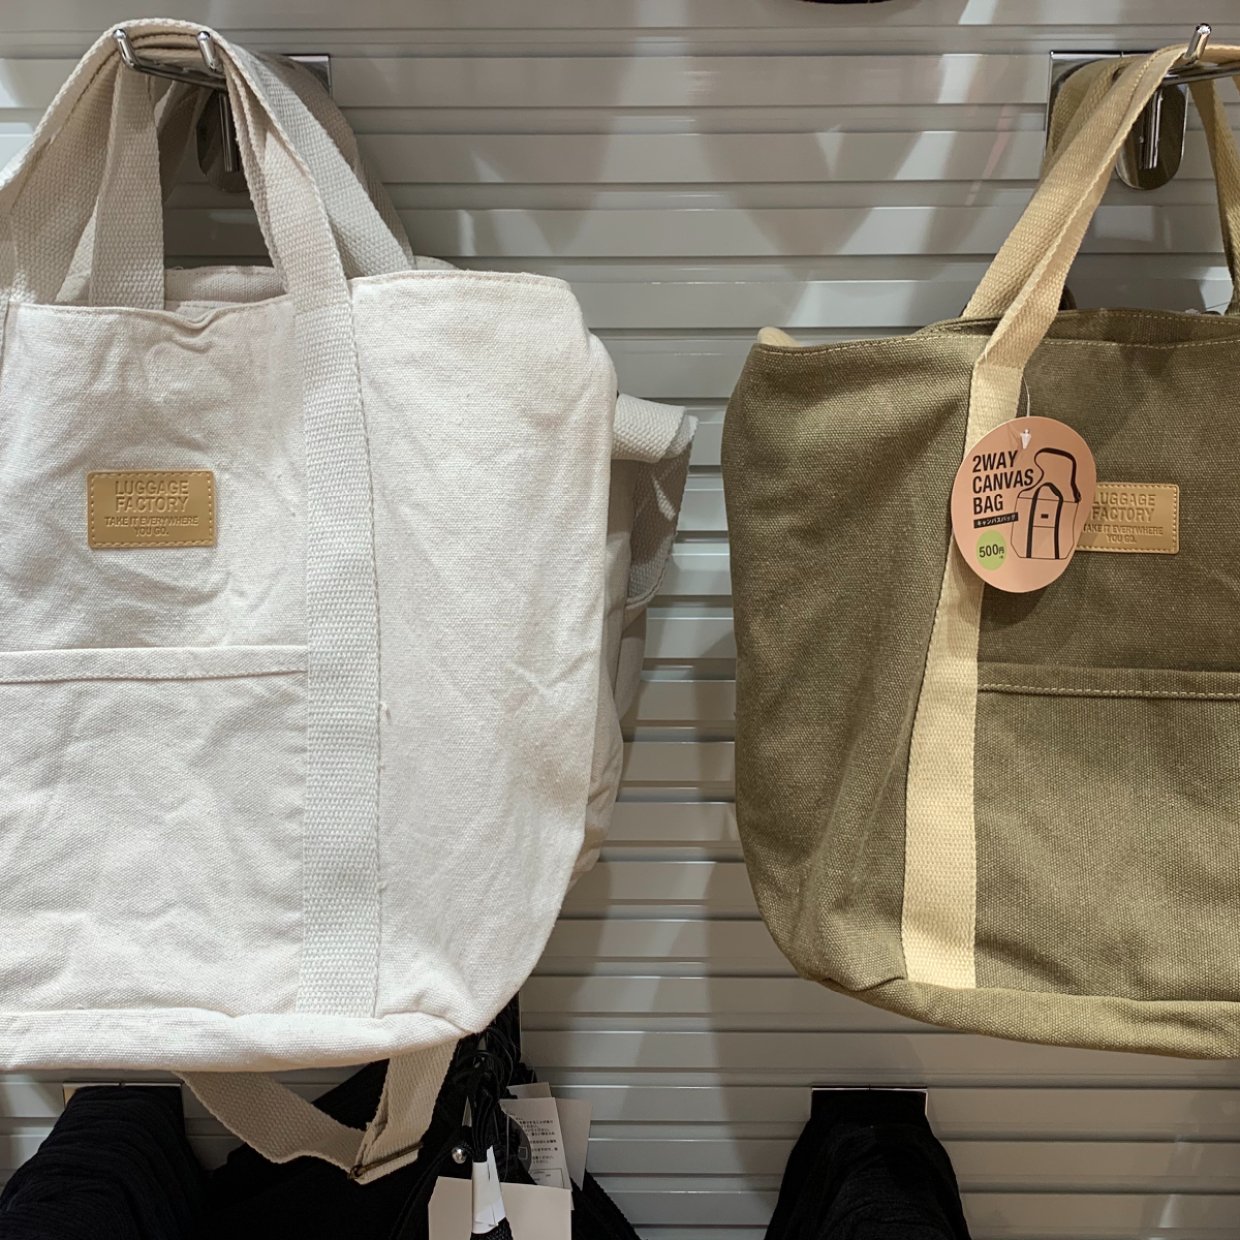  【3COINS】新作「キャンバスバッグ」が500円！2wayで高見えの優秀バッグは絶対買い♡ 